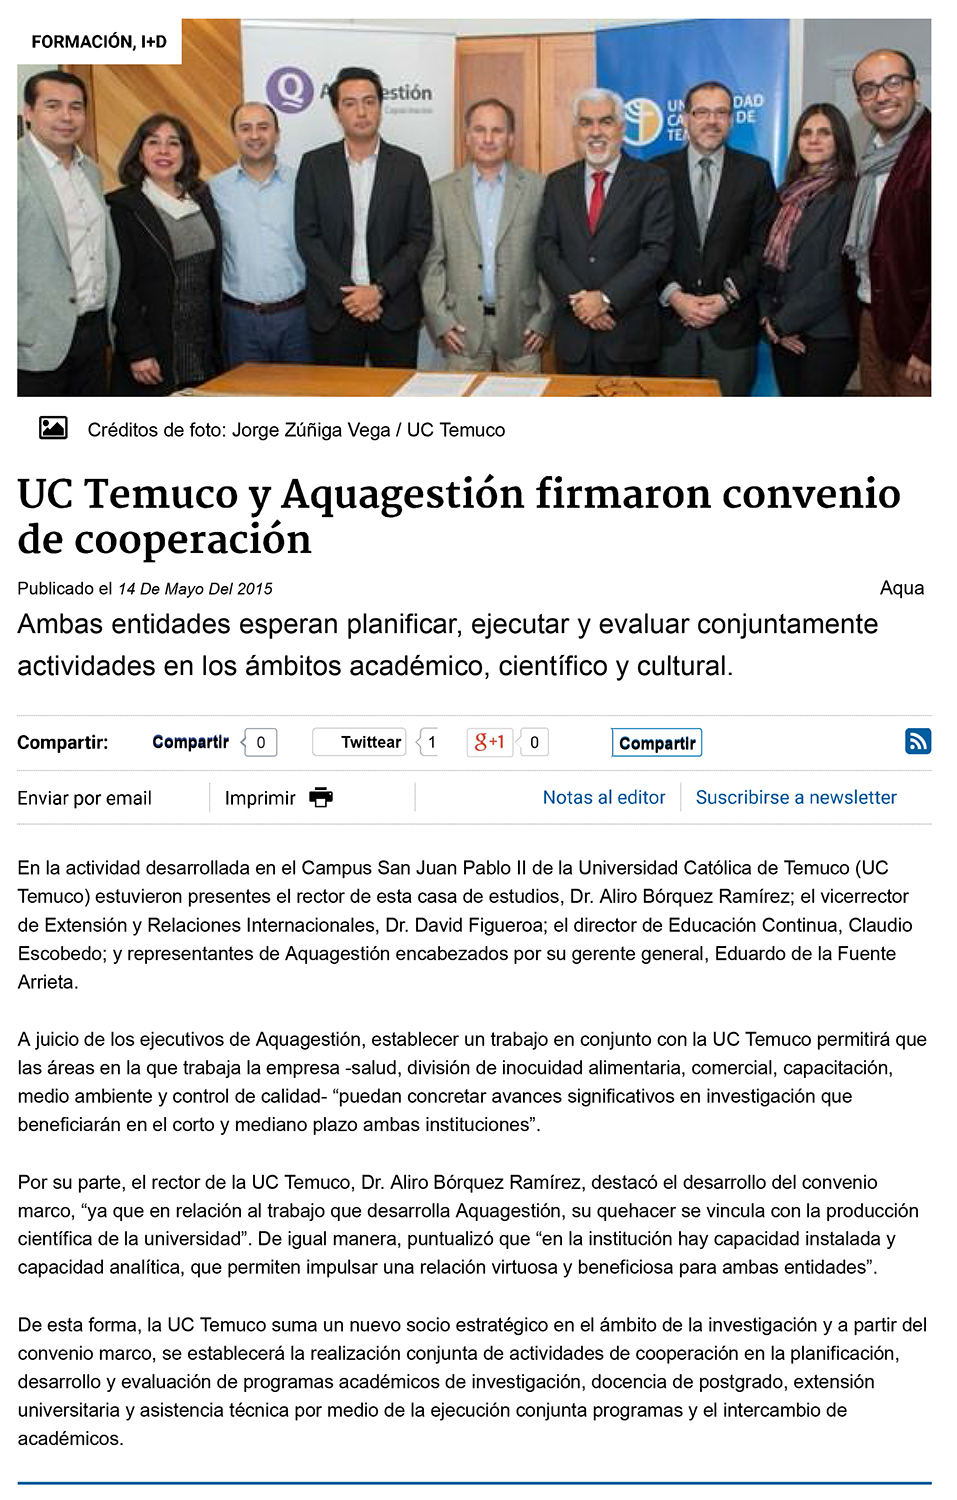 14-05-2015 UC Temuco y Aquagestión firmaron convenio de cooperación-1